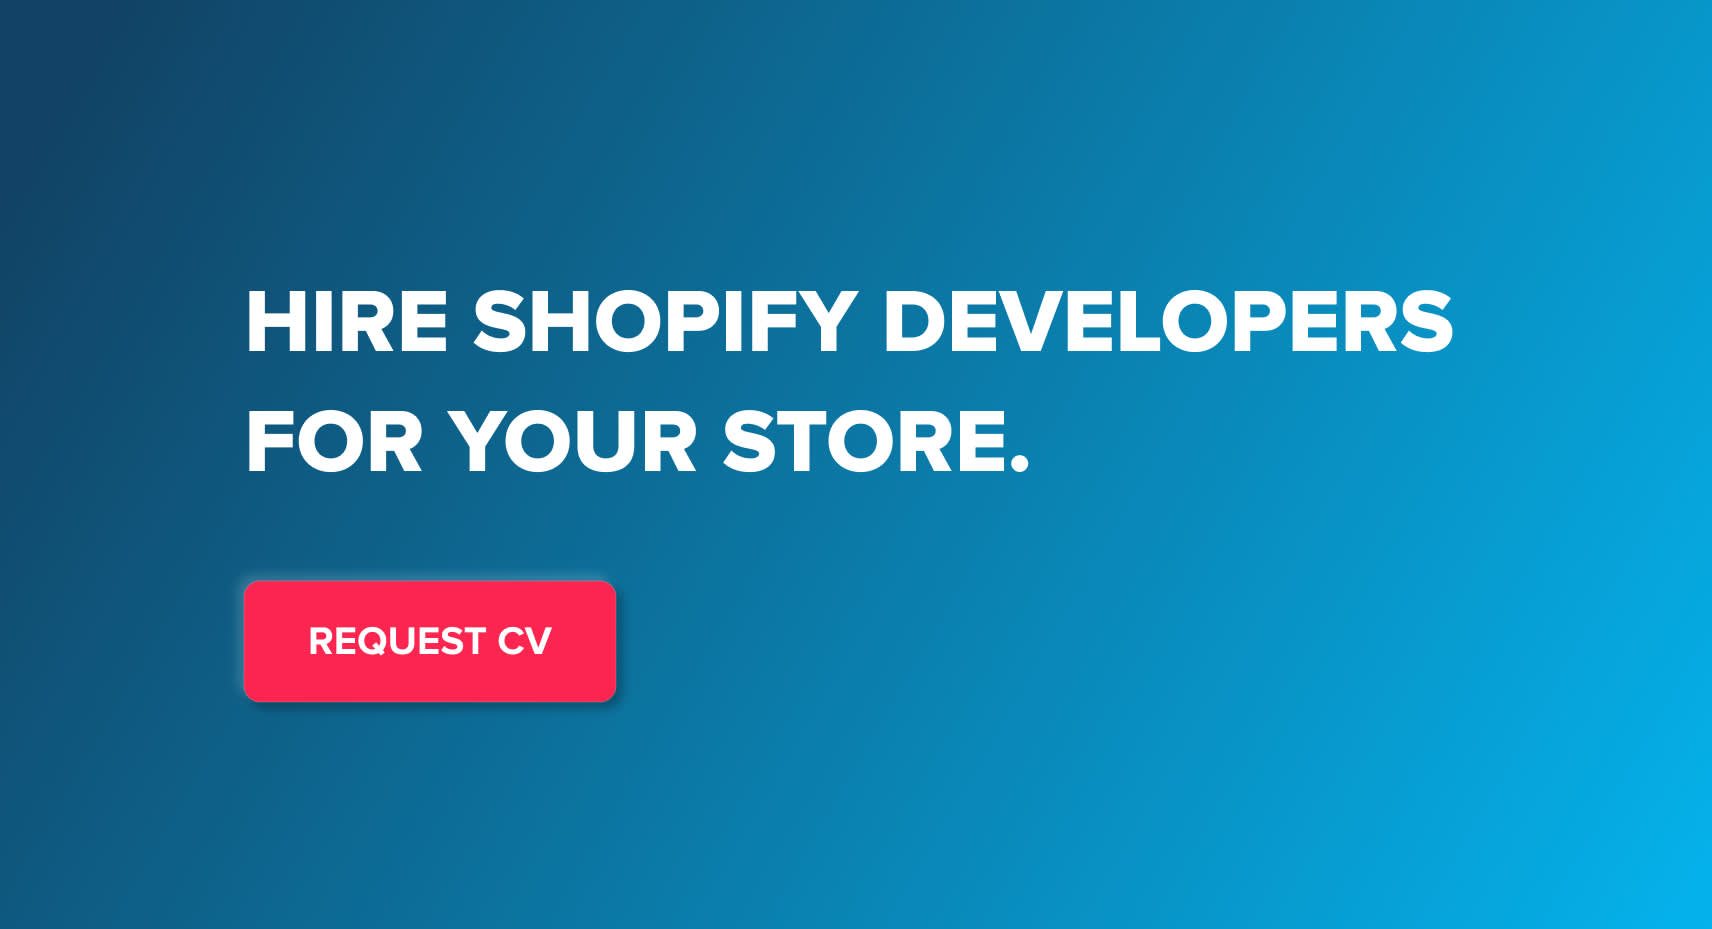 Shopify merchants